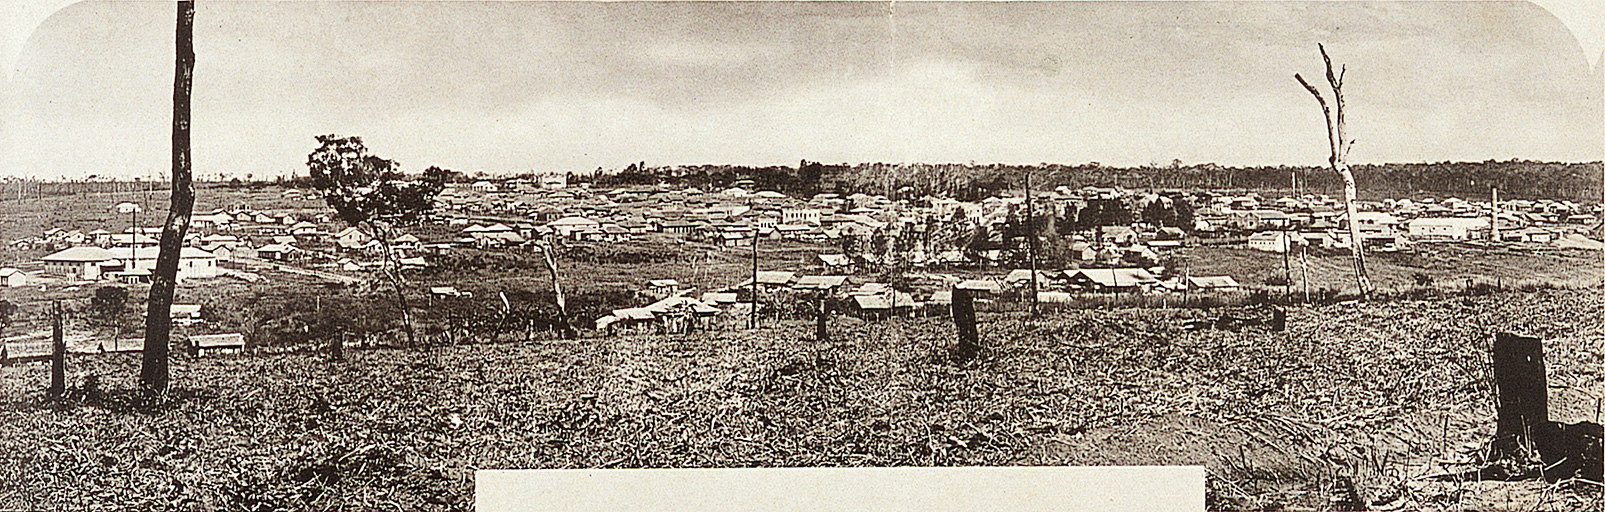 画像『バストス市街の全景・一九三七年十月現在』